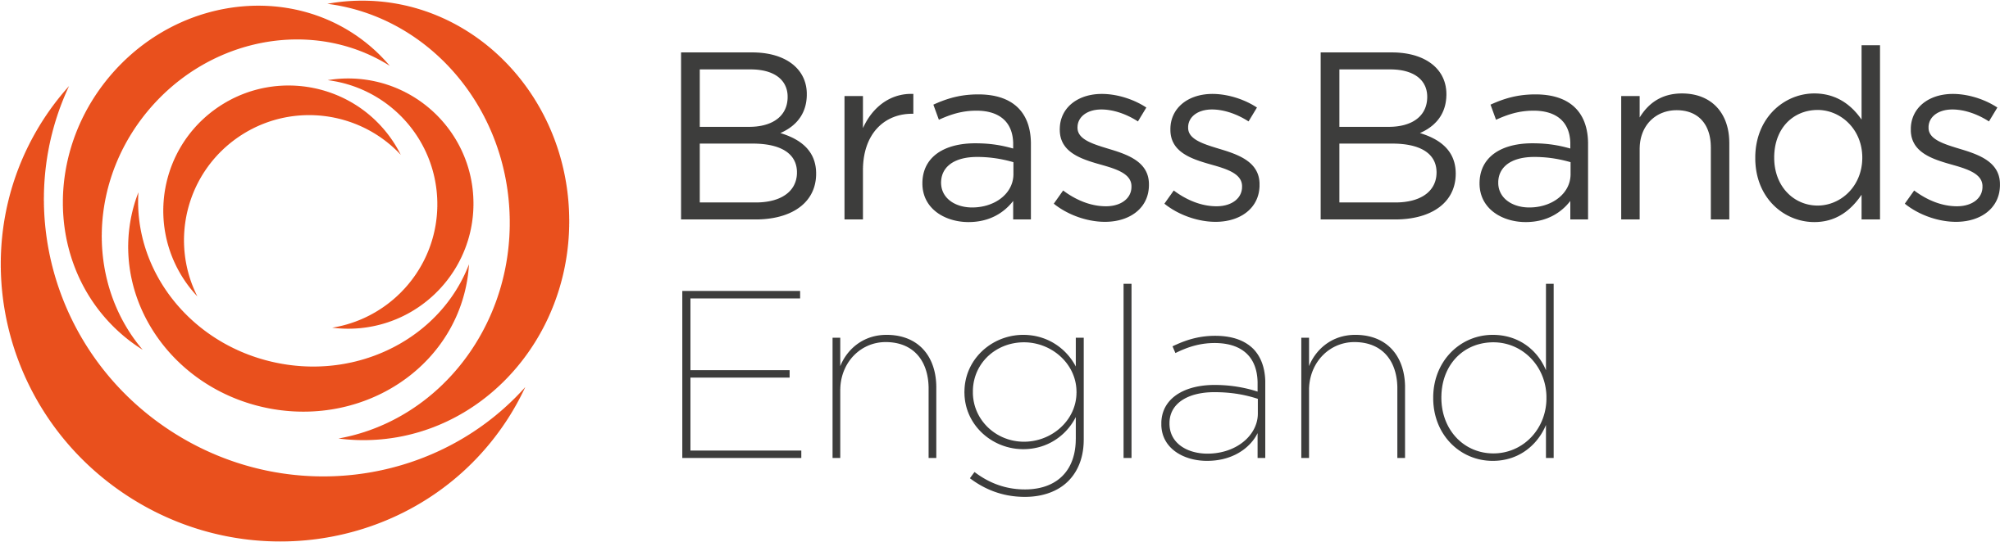 Brass Bands England